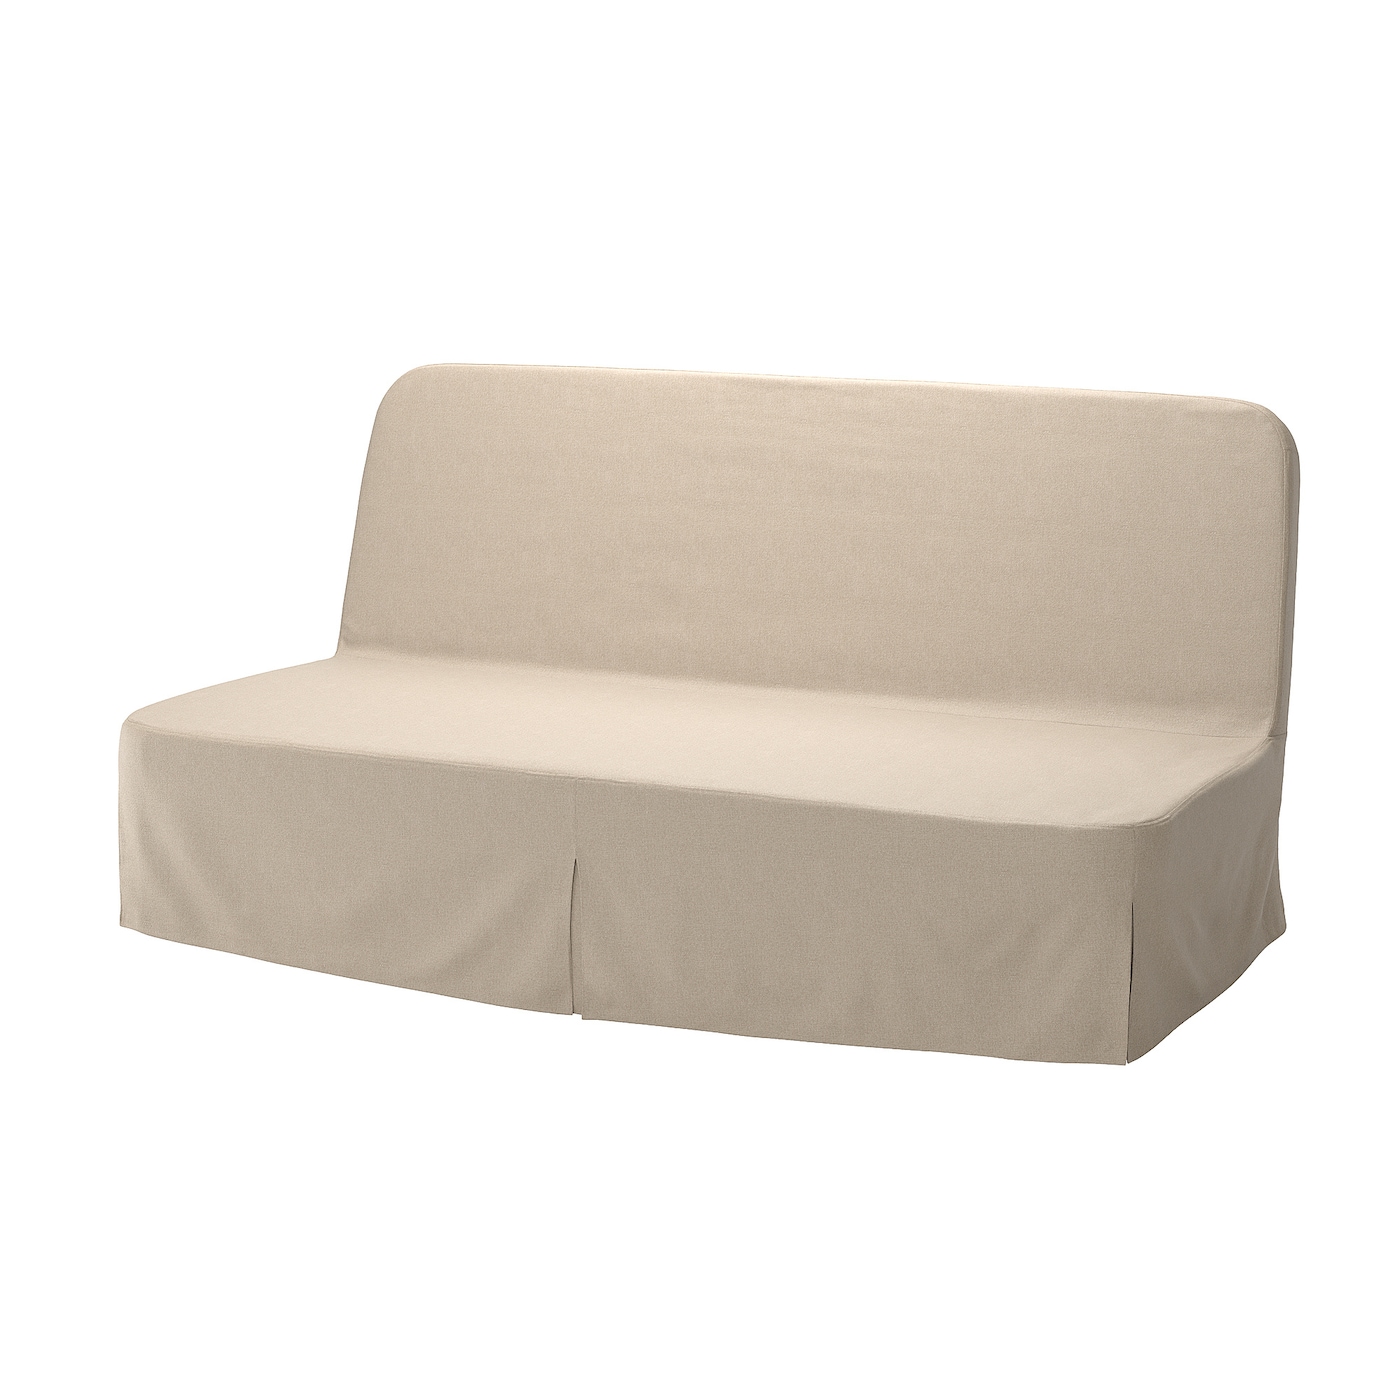 NYHAMN 3-местный диван-кровать, в комплекте пружинный матрас/Нагген бежевый IKEA домашний одноместный диван кровать спинка стул для спальни односпальный диван для девушек удобное эркерное окно маленький диван складн